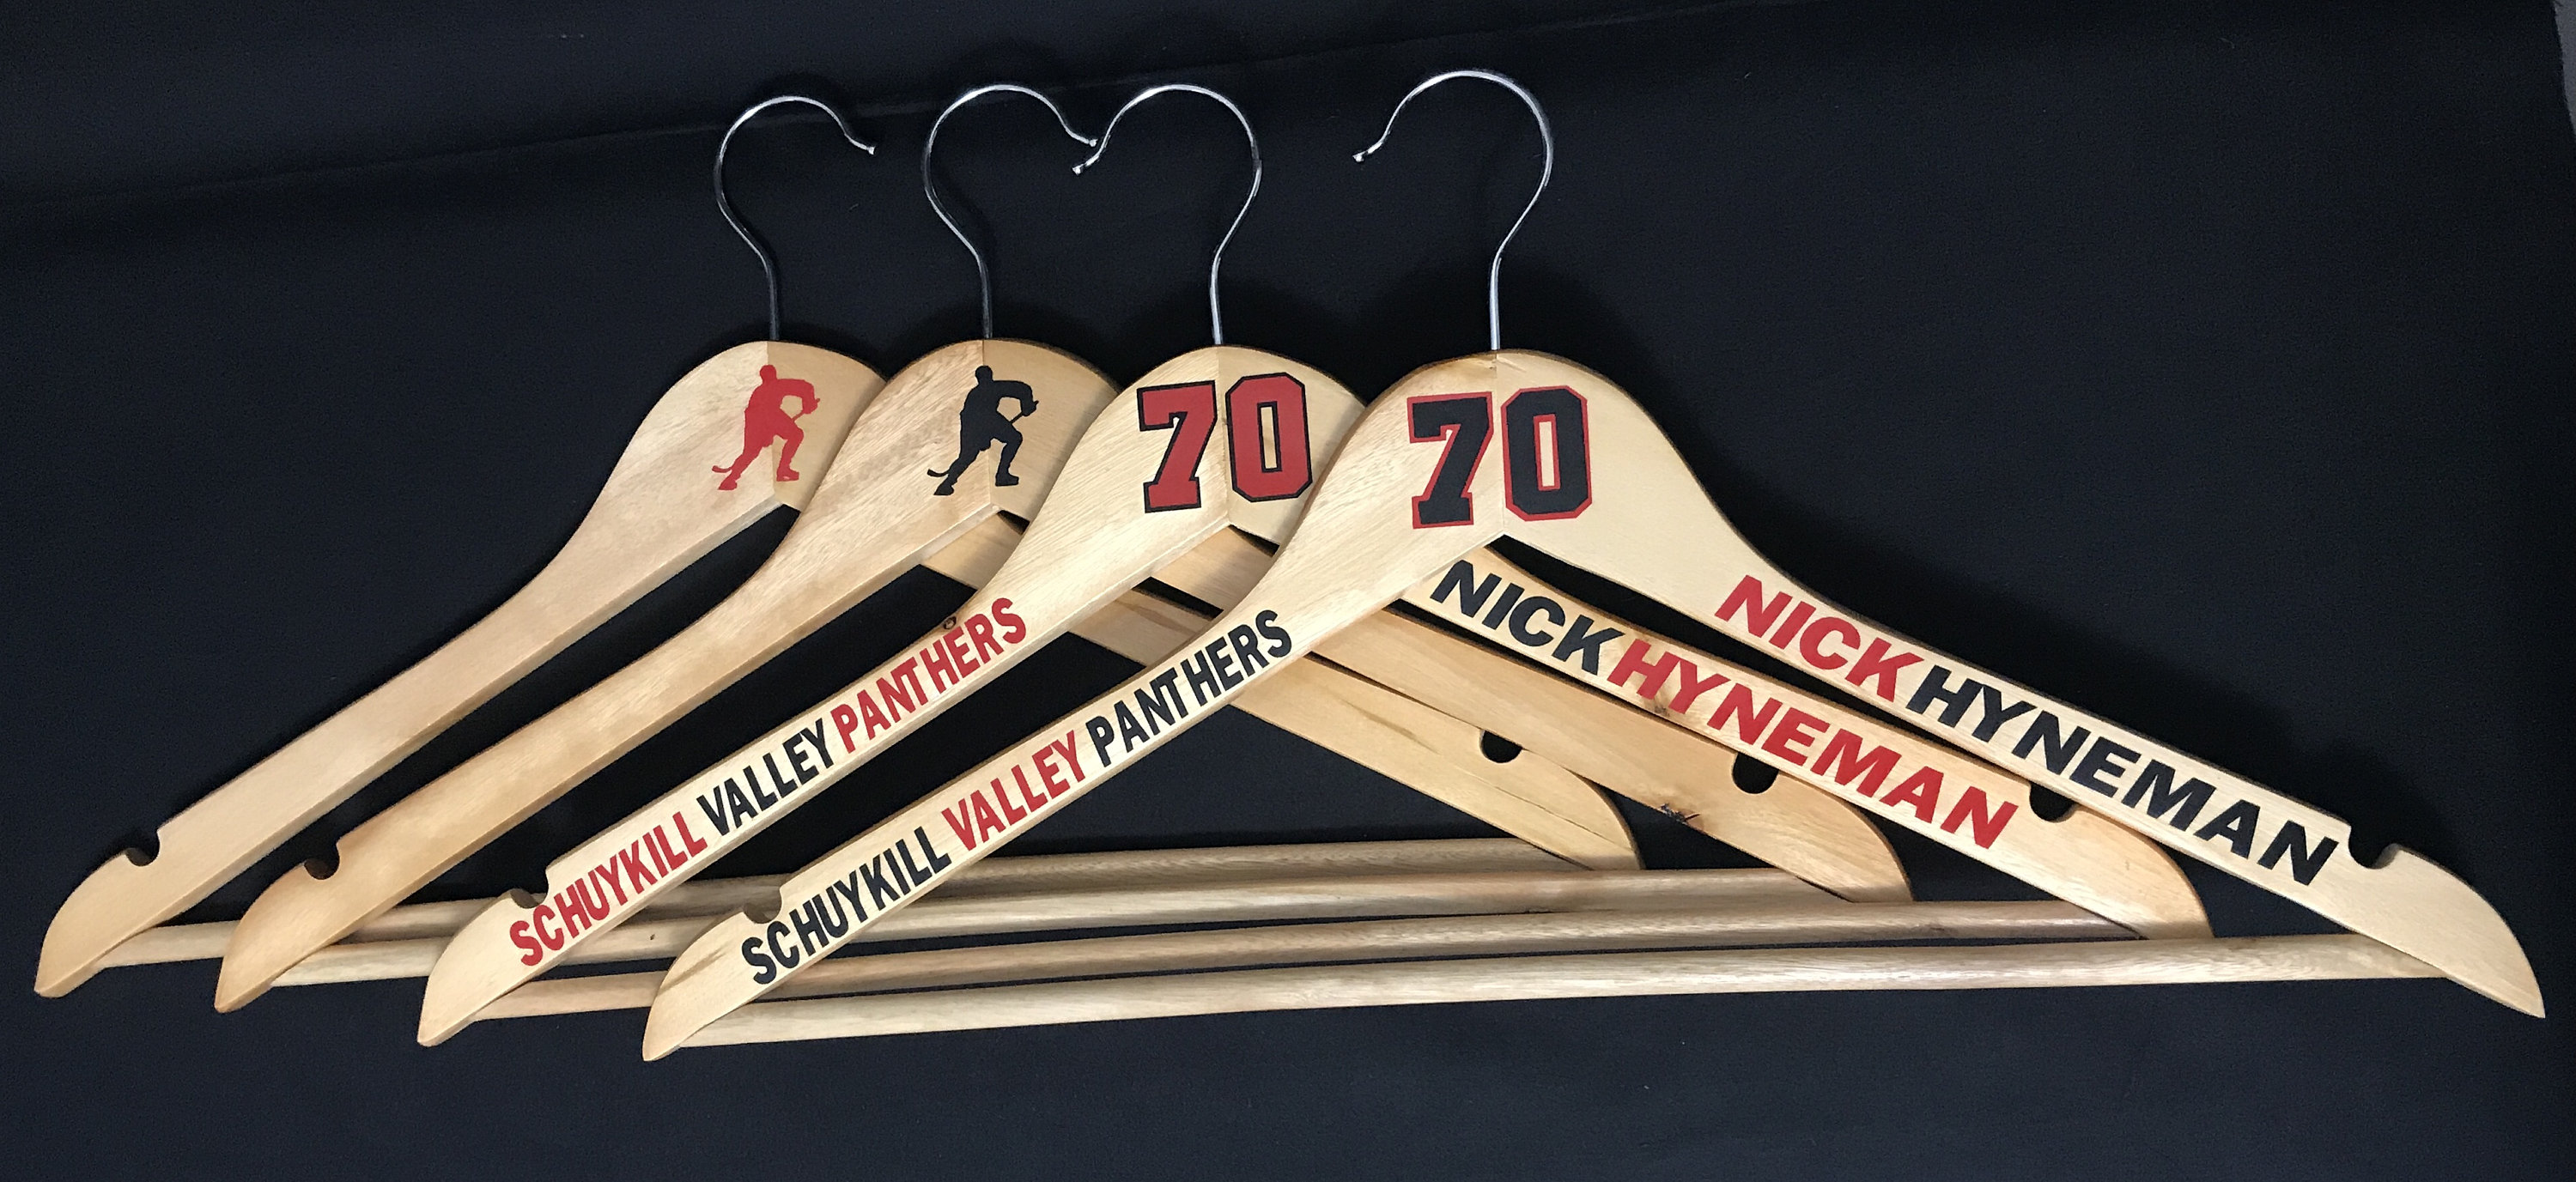 Jersey Hanger Photos — ShirtWhiz  Jersey display, Hockey jersey display,  Hockey man cave